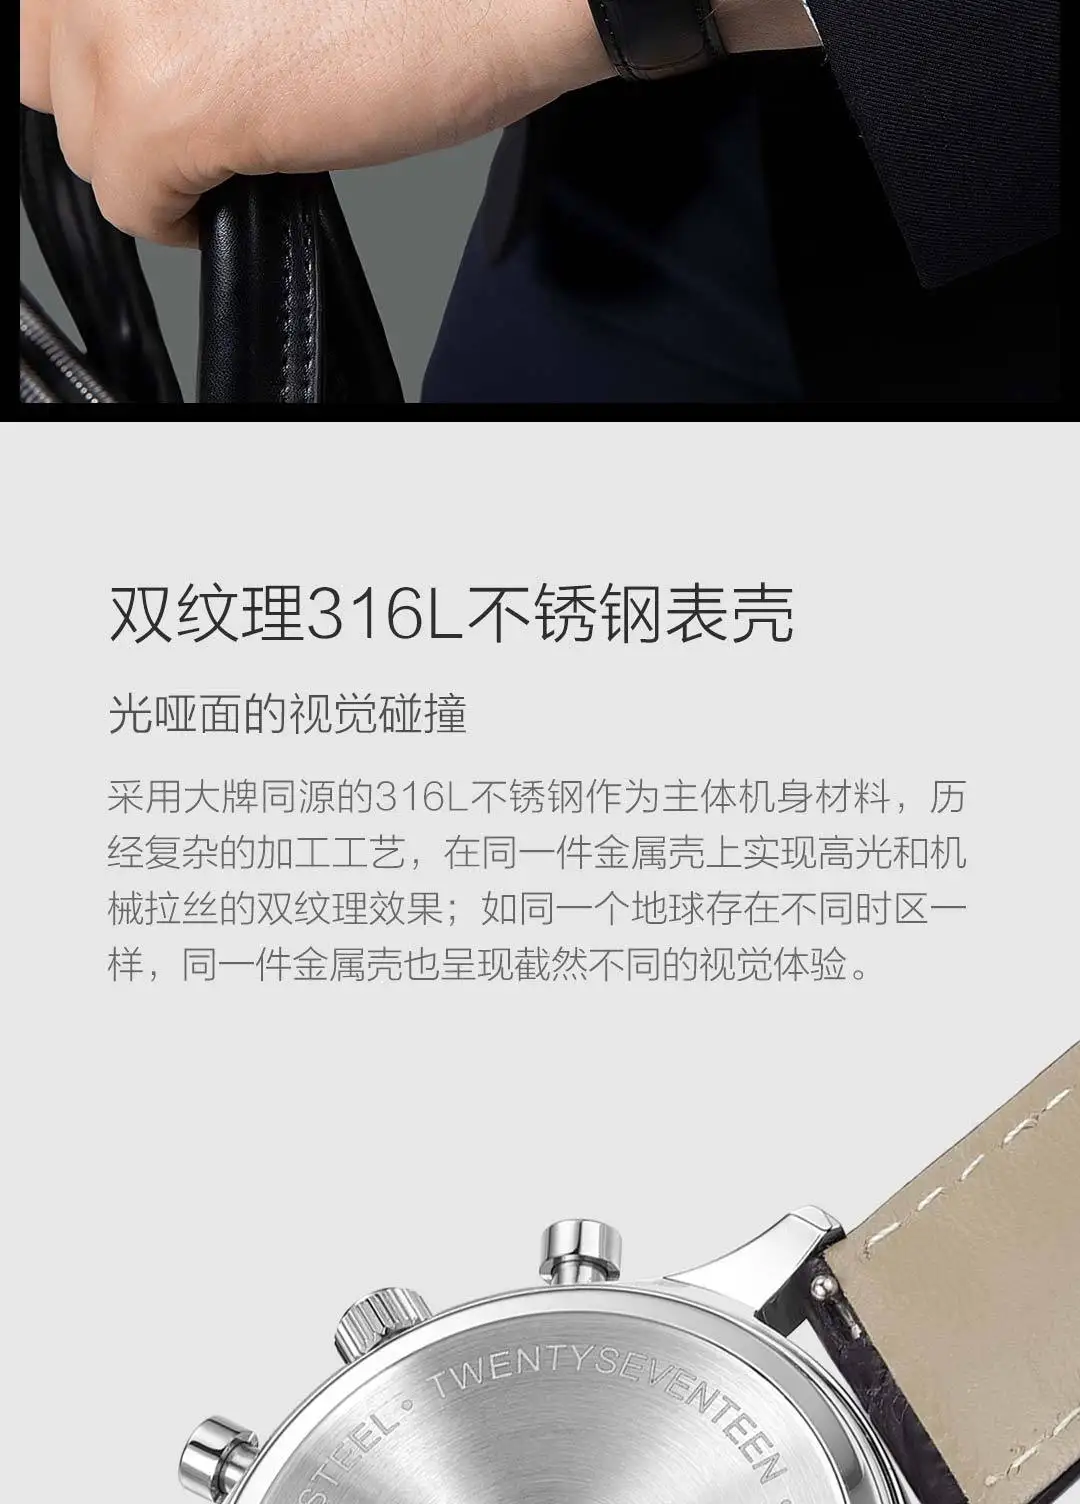 2 цвета Xiaomi Youpin TwentySeventeen светильник, Бизнес Кварцевые часы, высокое качество, элегантные для мужчин и женщин